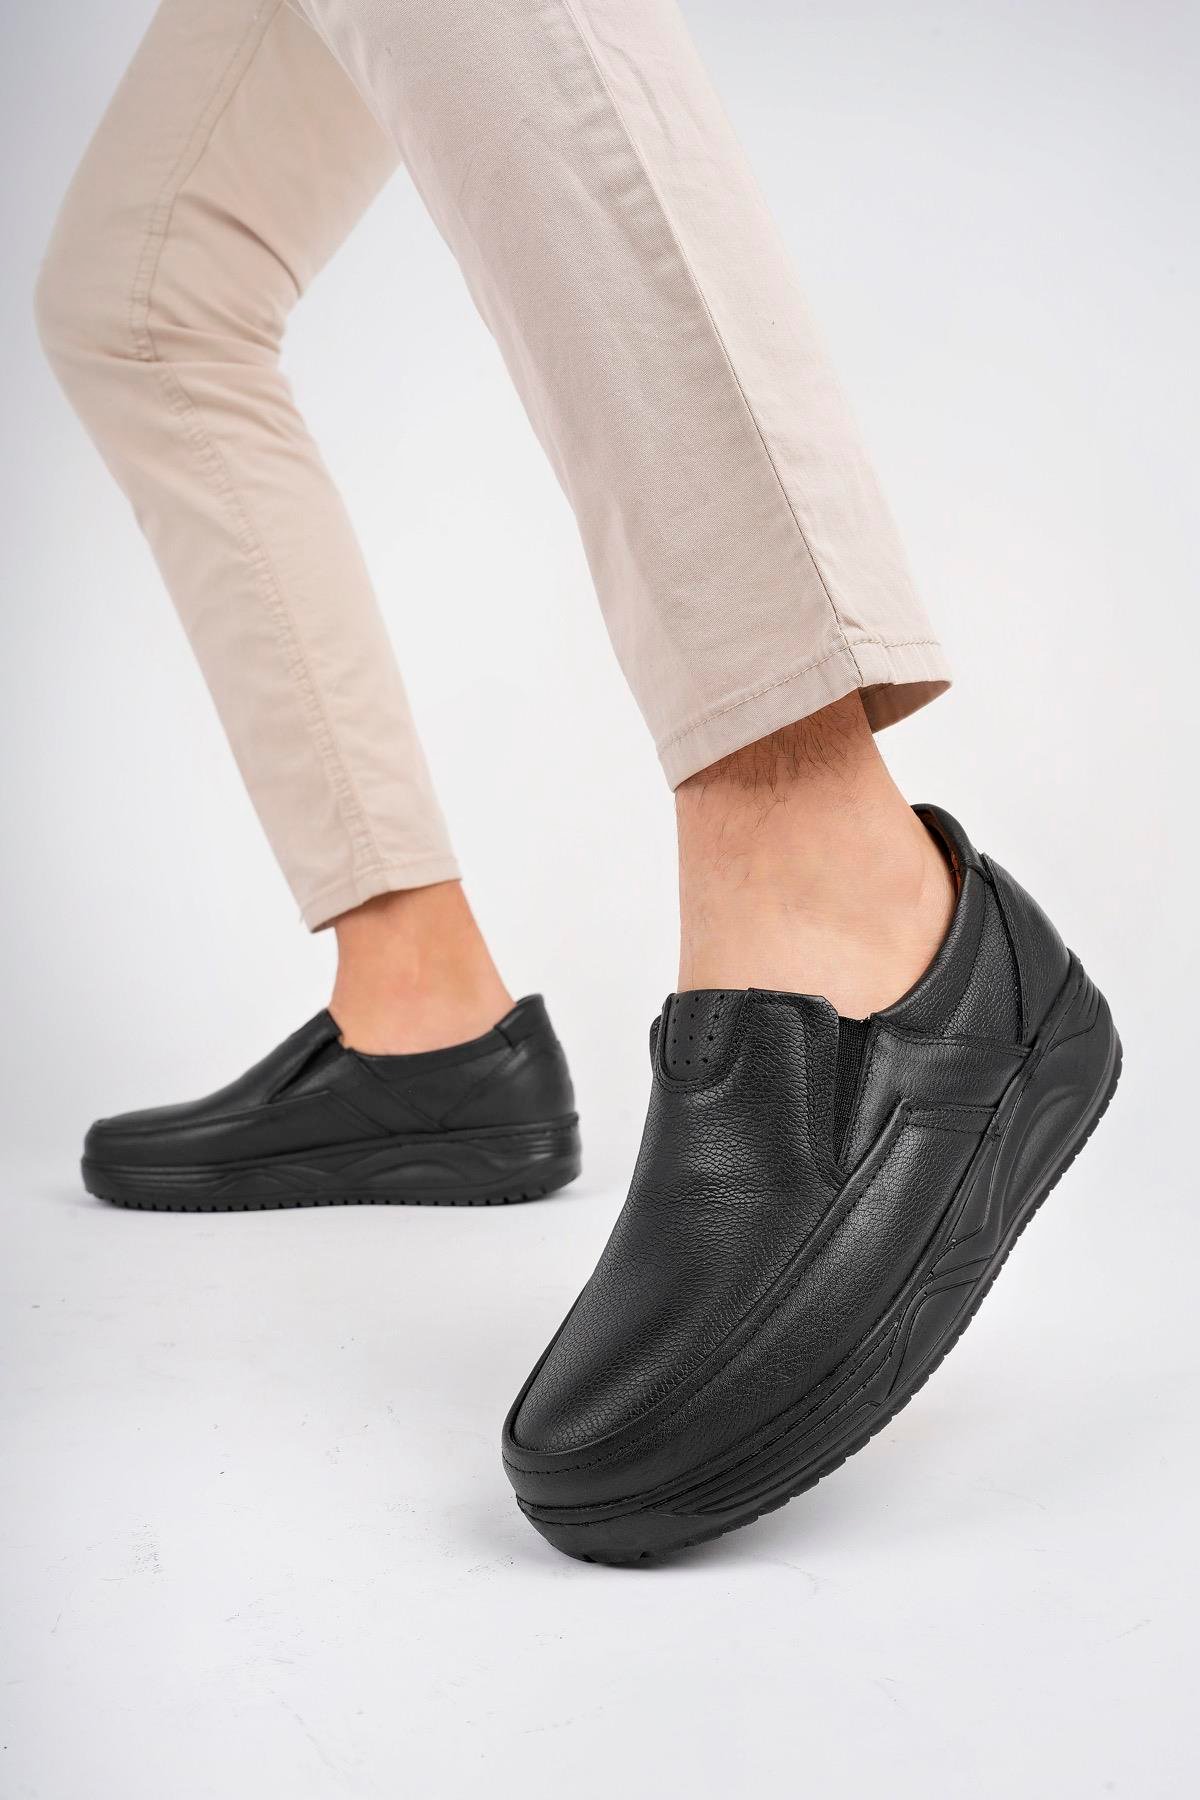 Hakiki Deri Siyah Erkek Yürüyüş Ayakkabısı-Casual Ayakkabı MRD15-0426